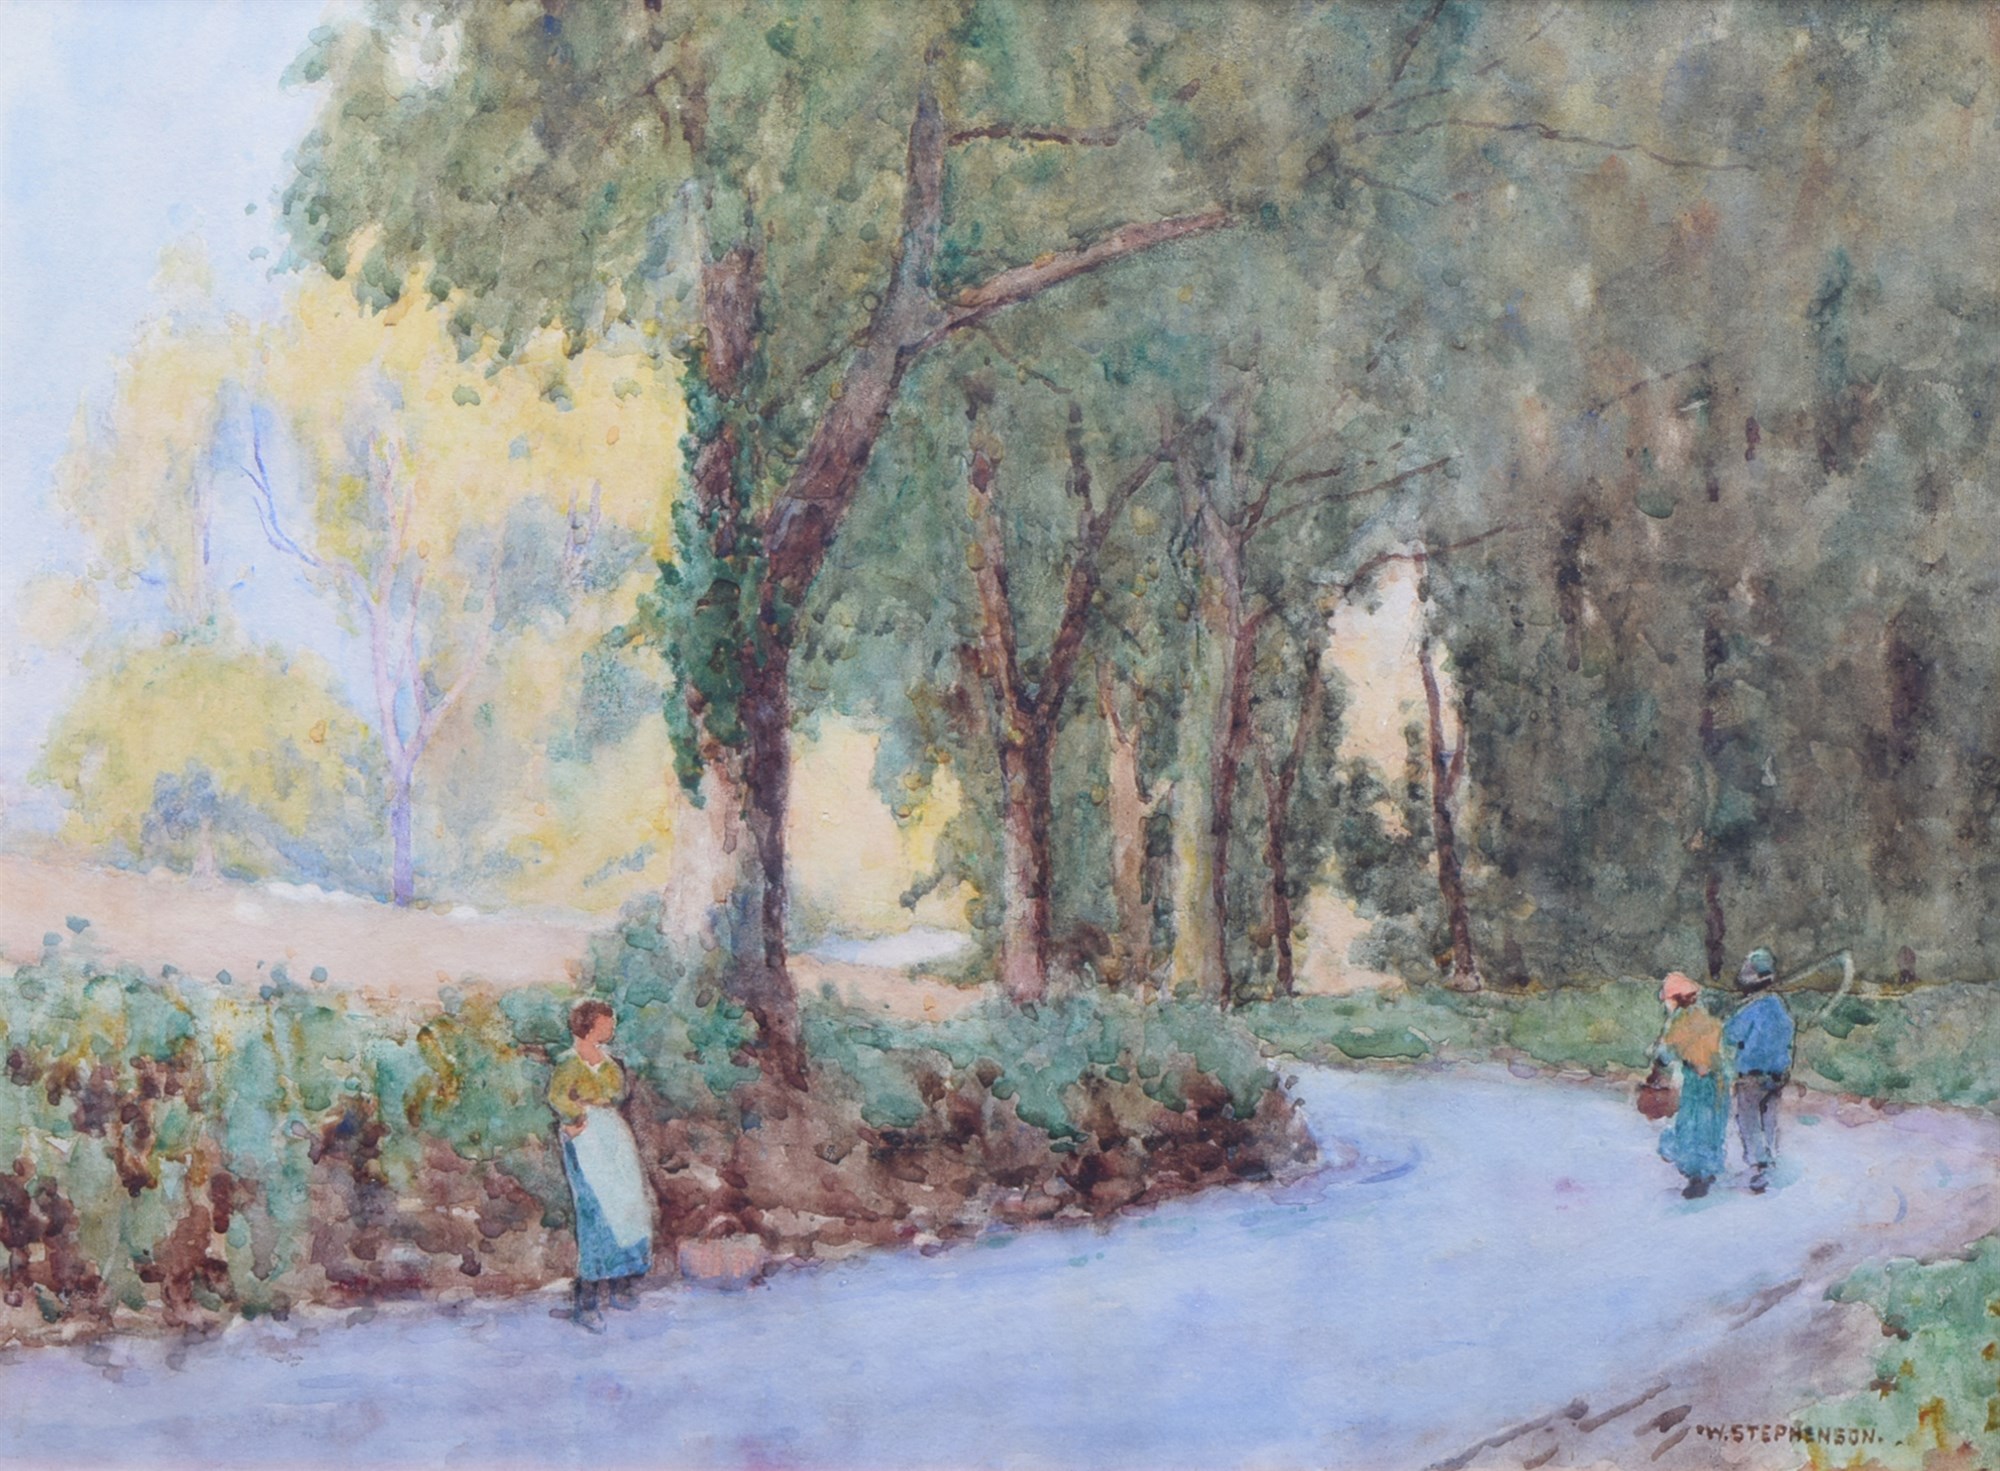 Willie Stephenson R.C.A. (1857-1938), "Evening Glow, Gloddaeth Road near Llandudno", signed,